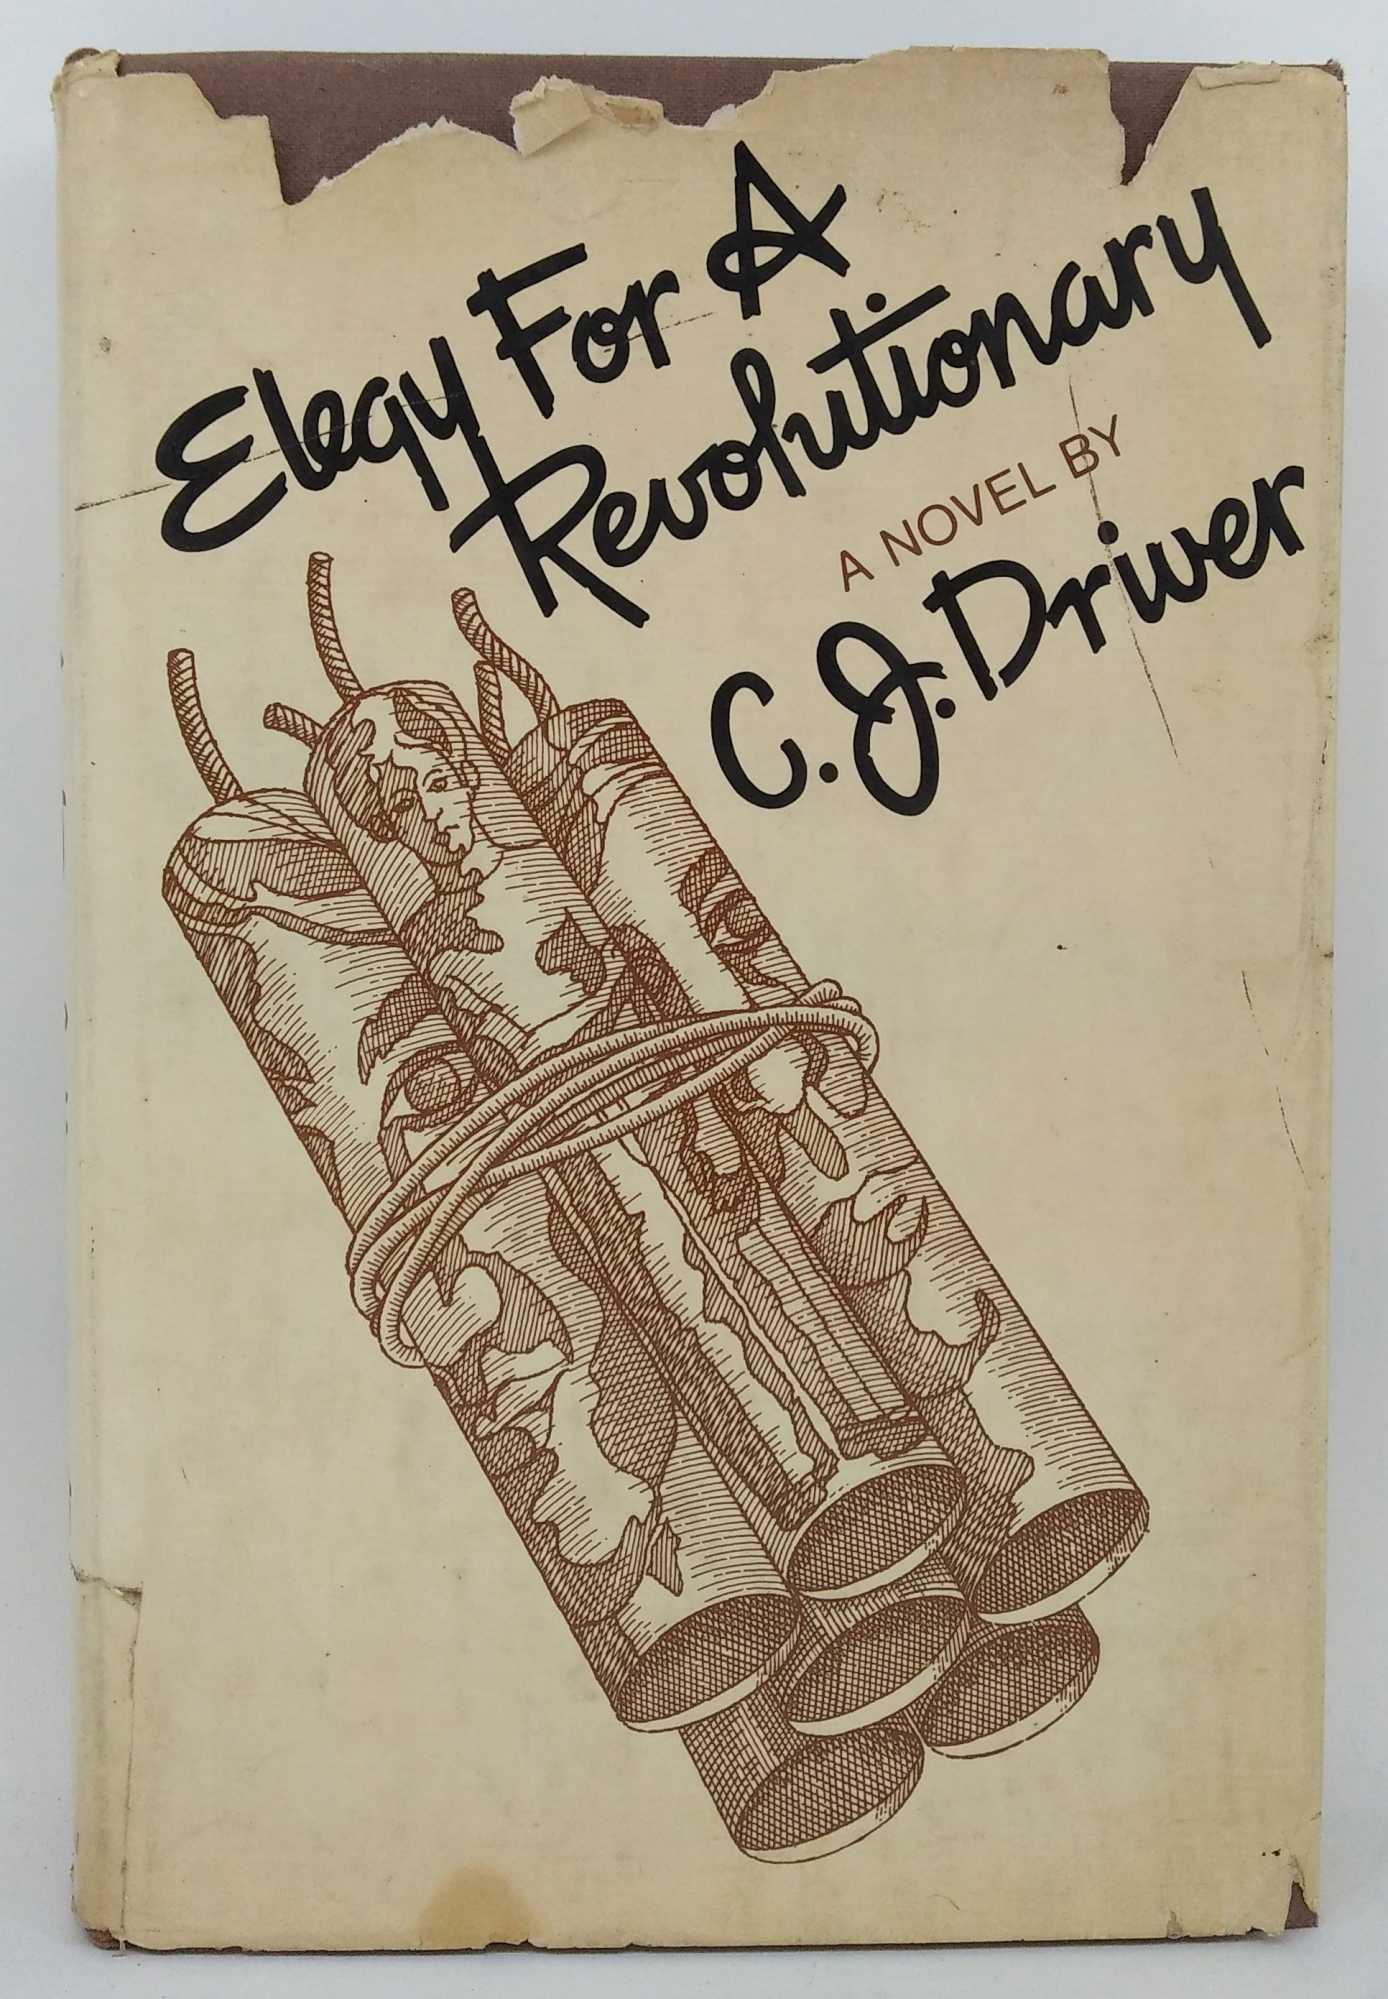 C. J. Driver - Elegy for a Revolutionary